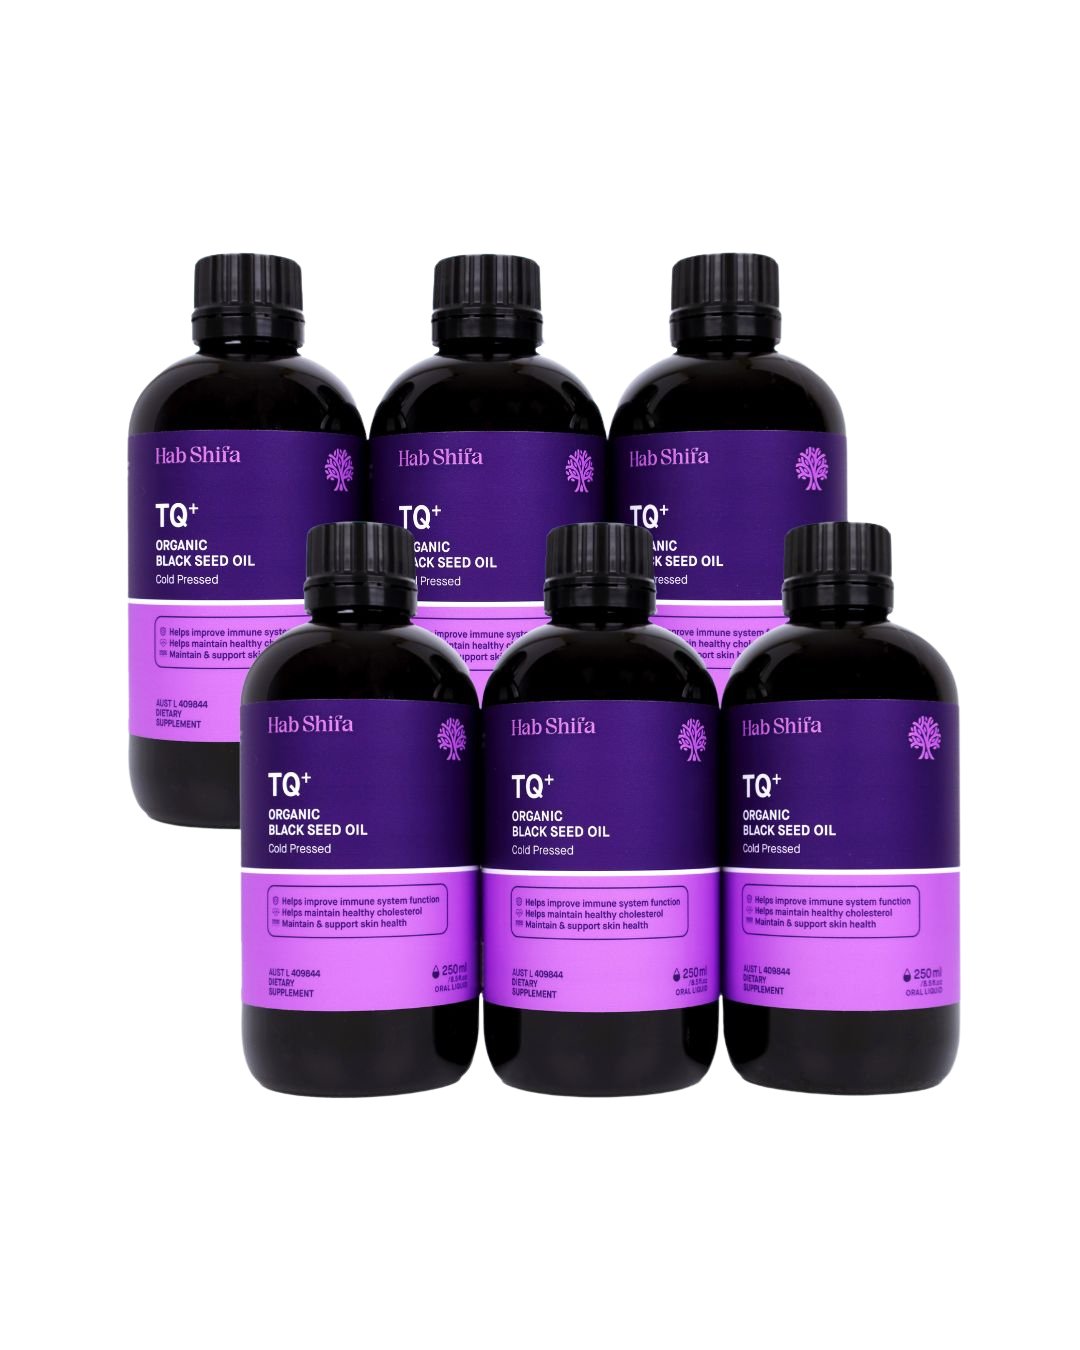 TQ+ Organic Black Seed Oil - Hab Shifa